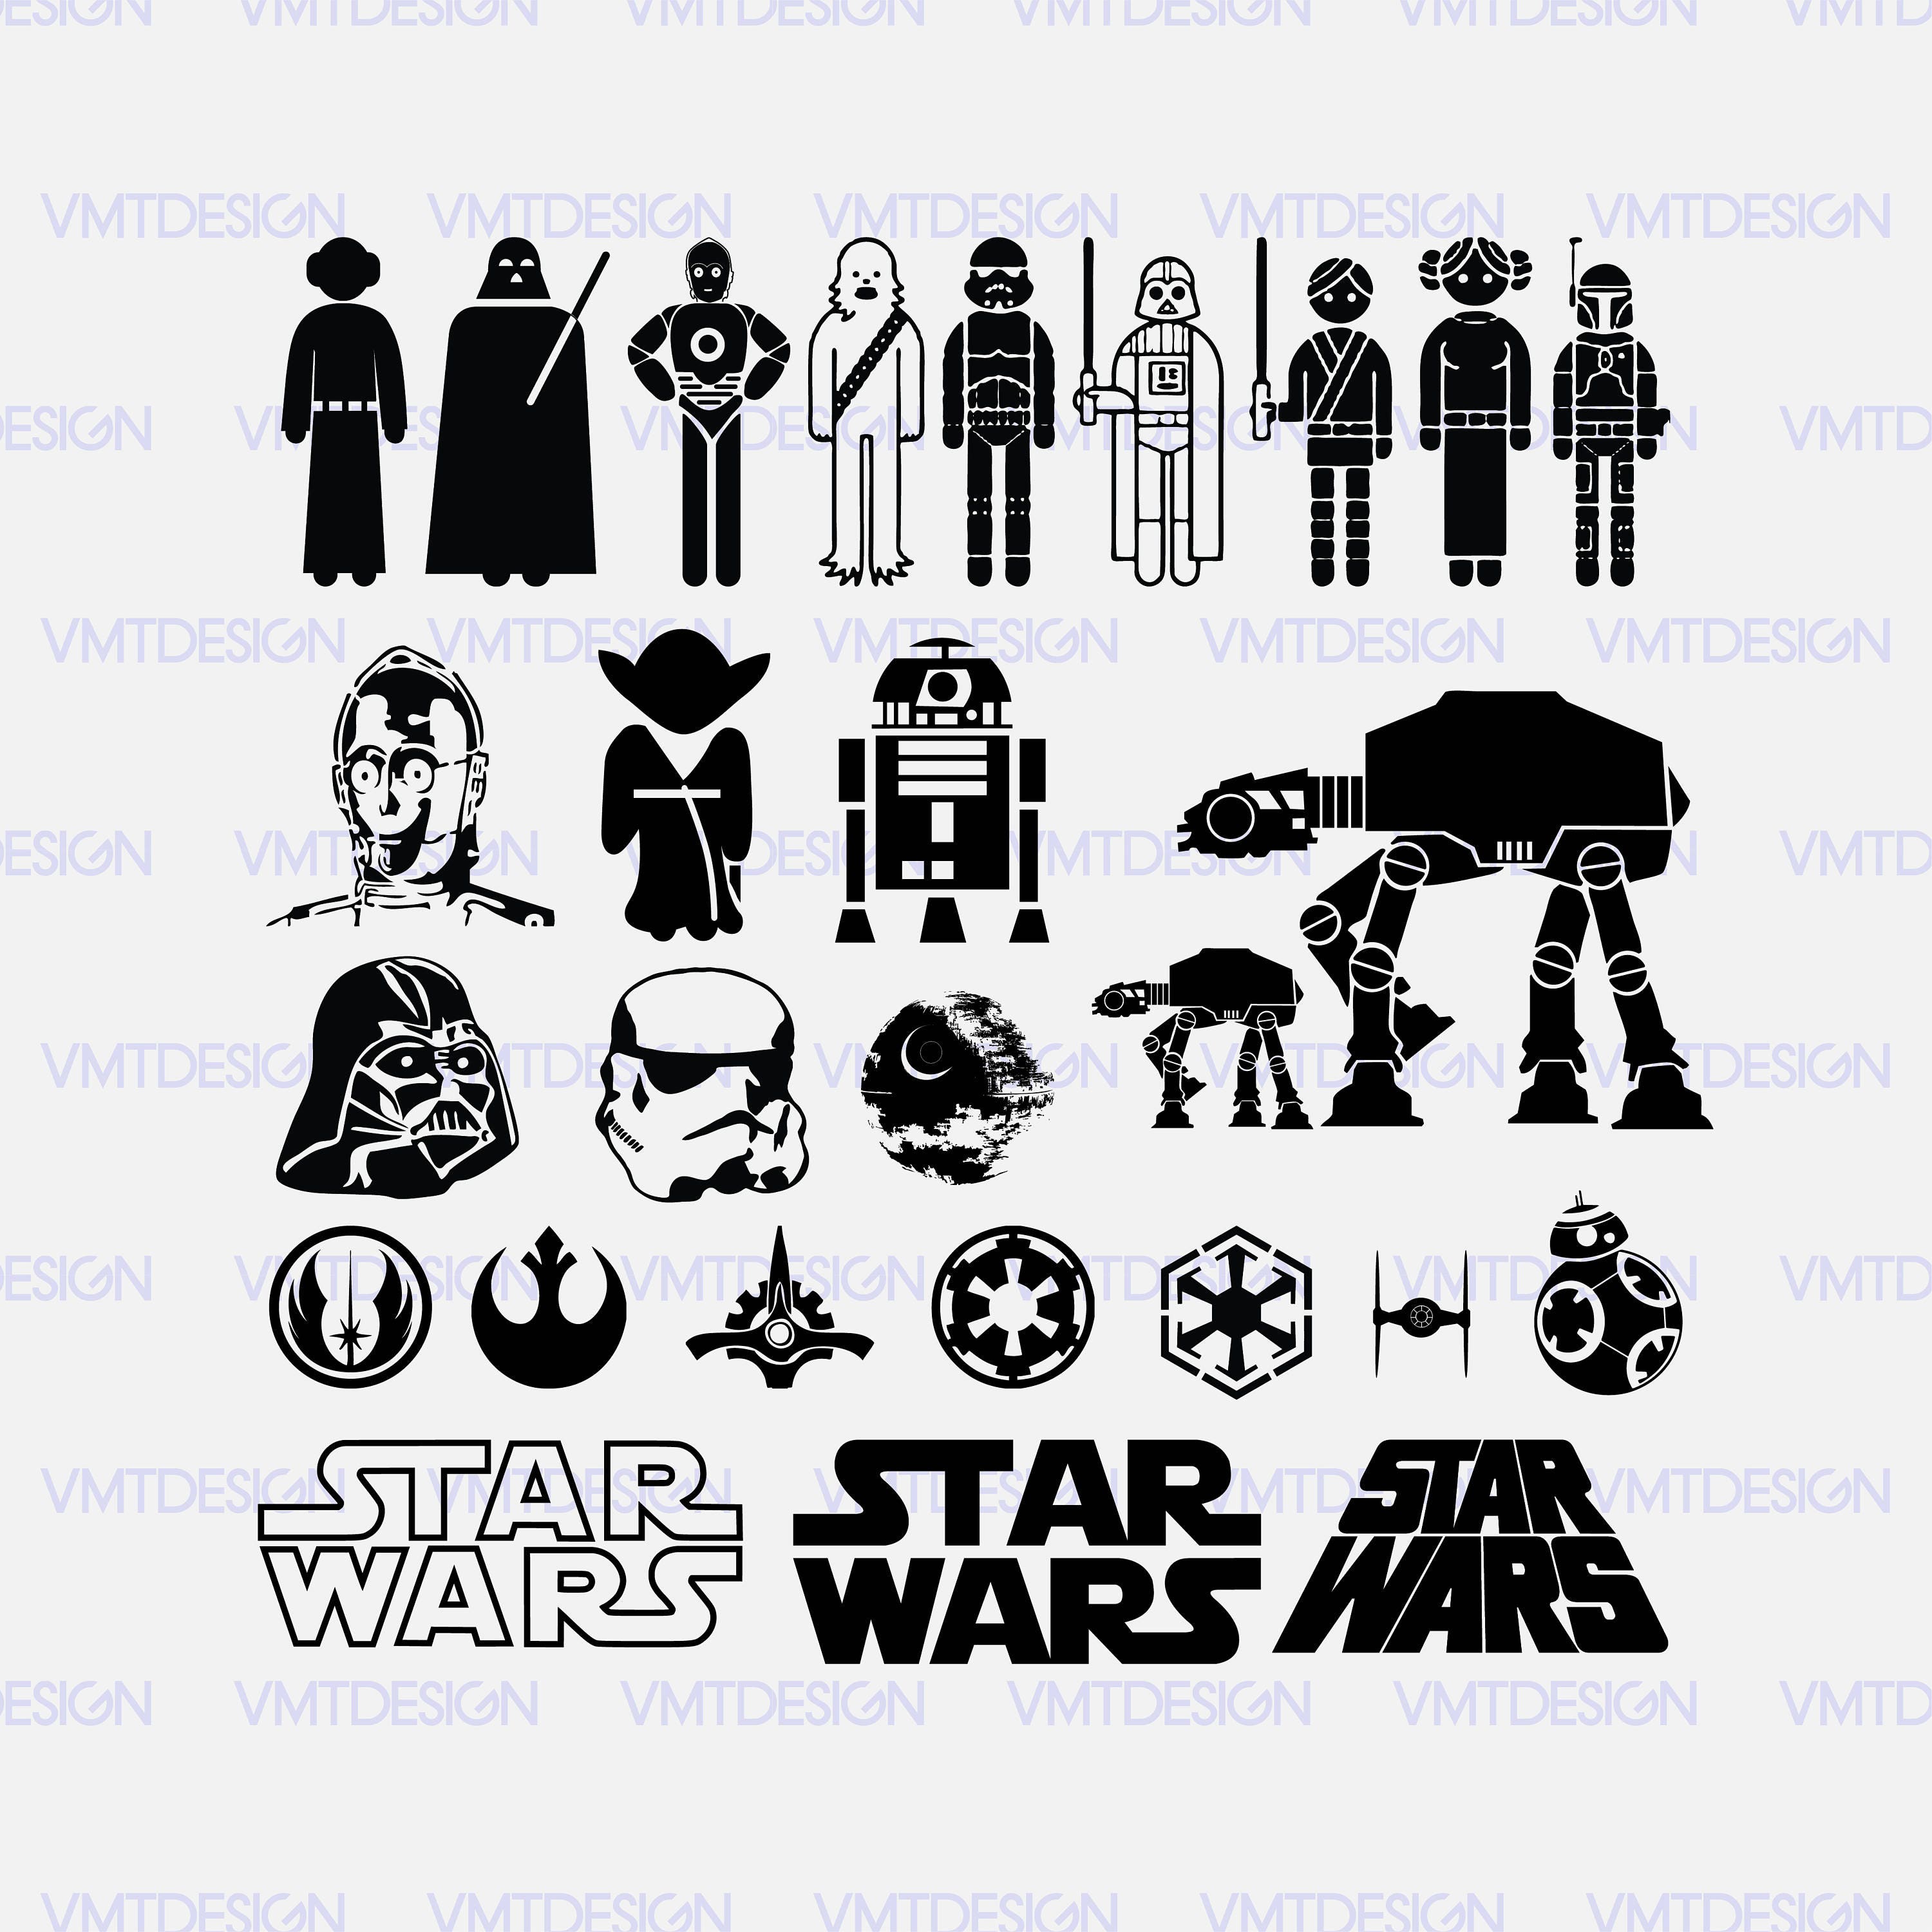 Download Star wars svg Star wars vector Starwars clipart Starwars